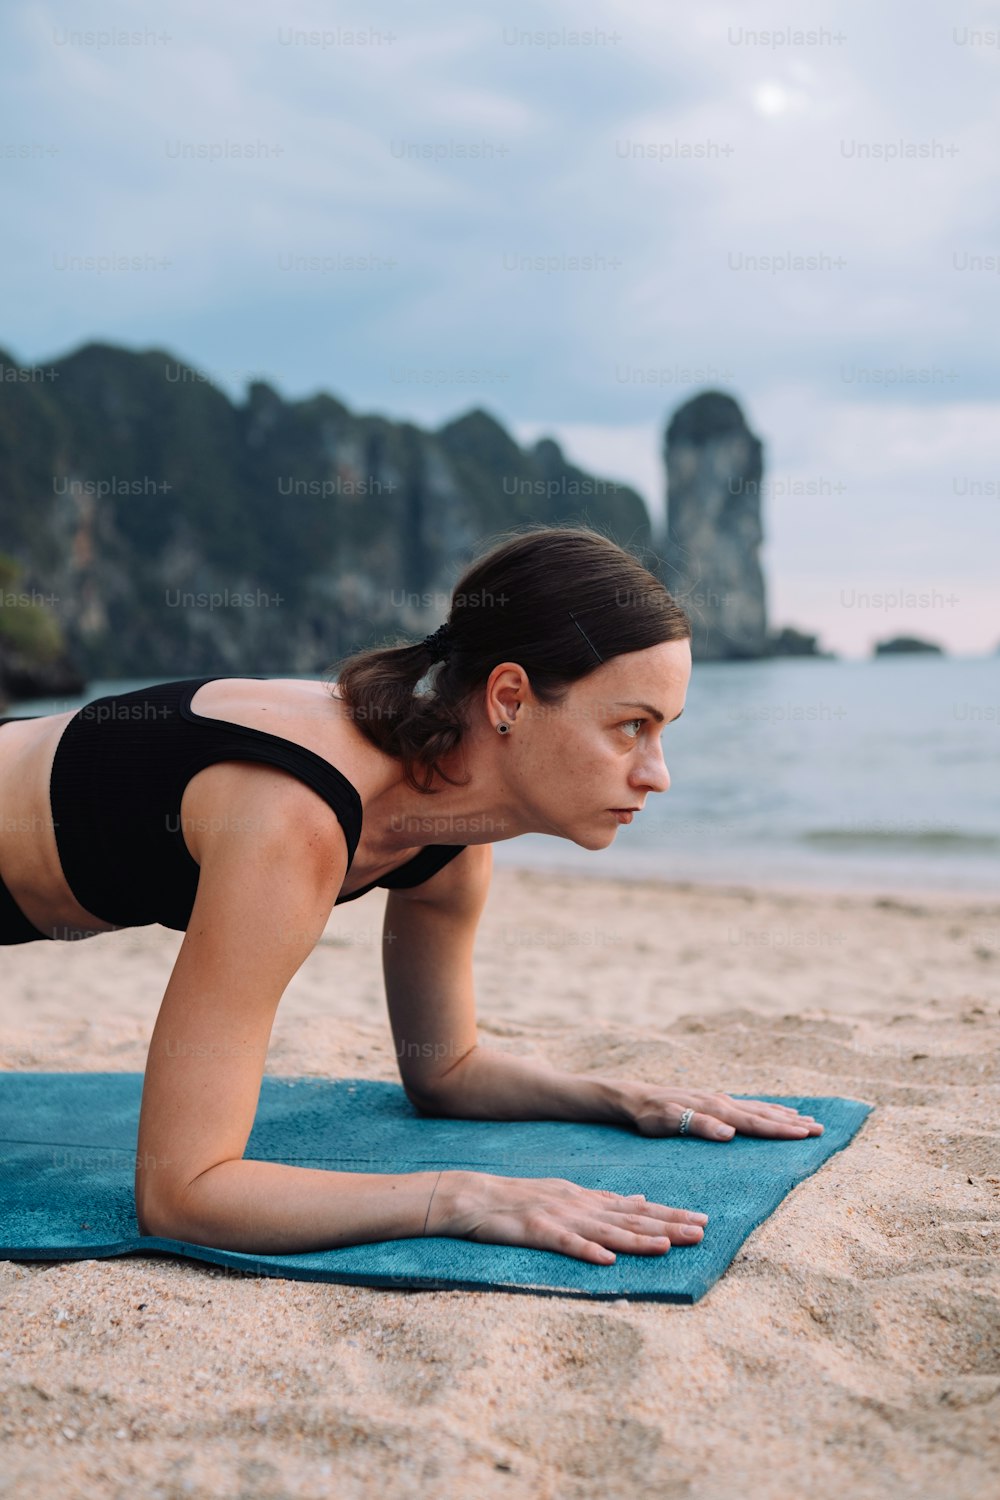 Una mujer haciendo flexiones en una toalla en la playa